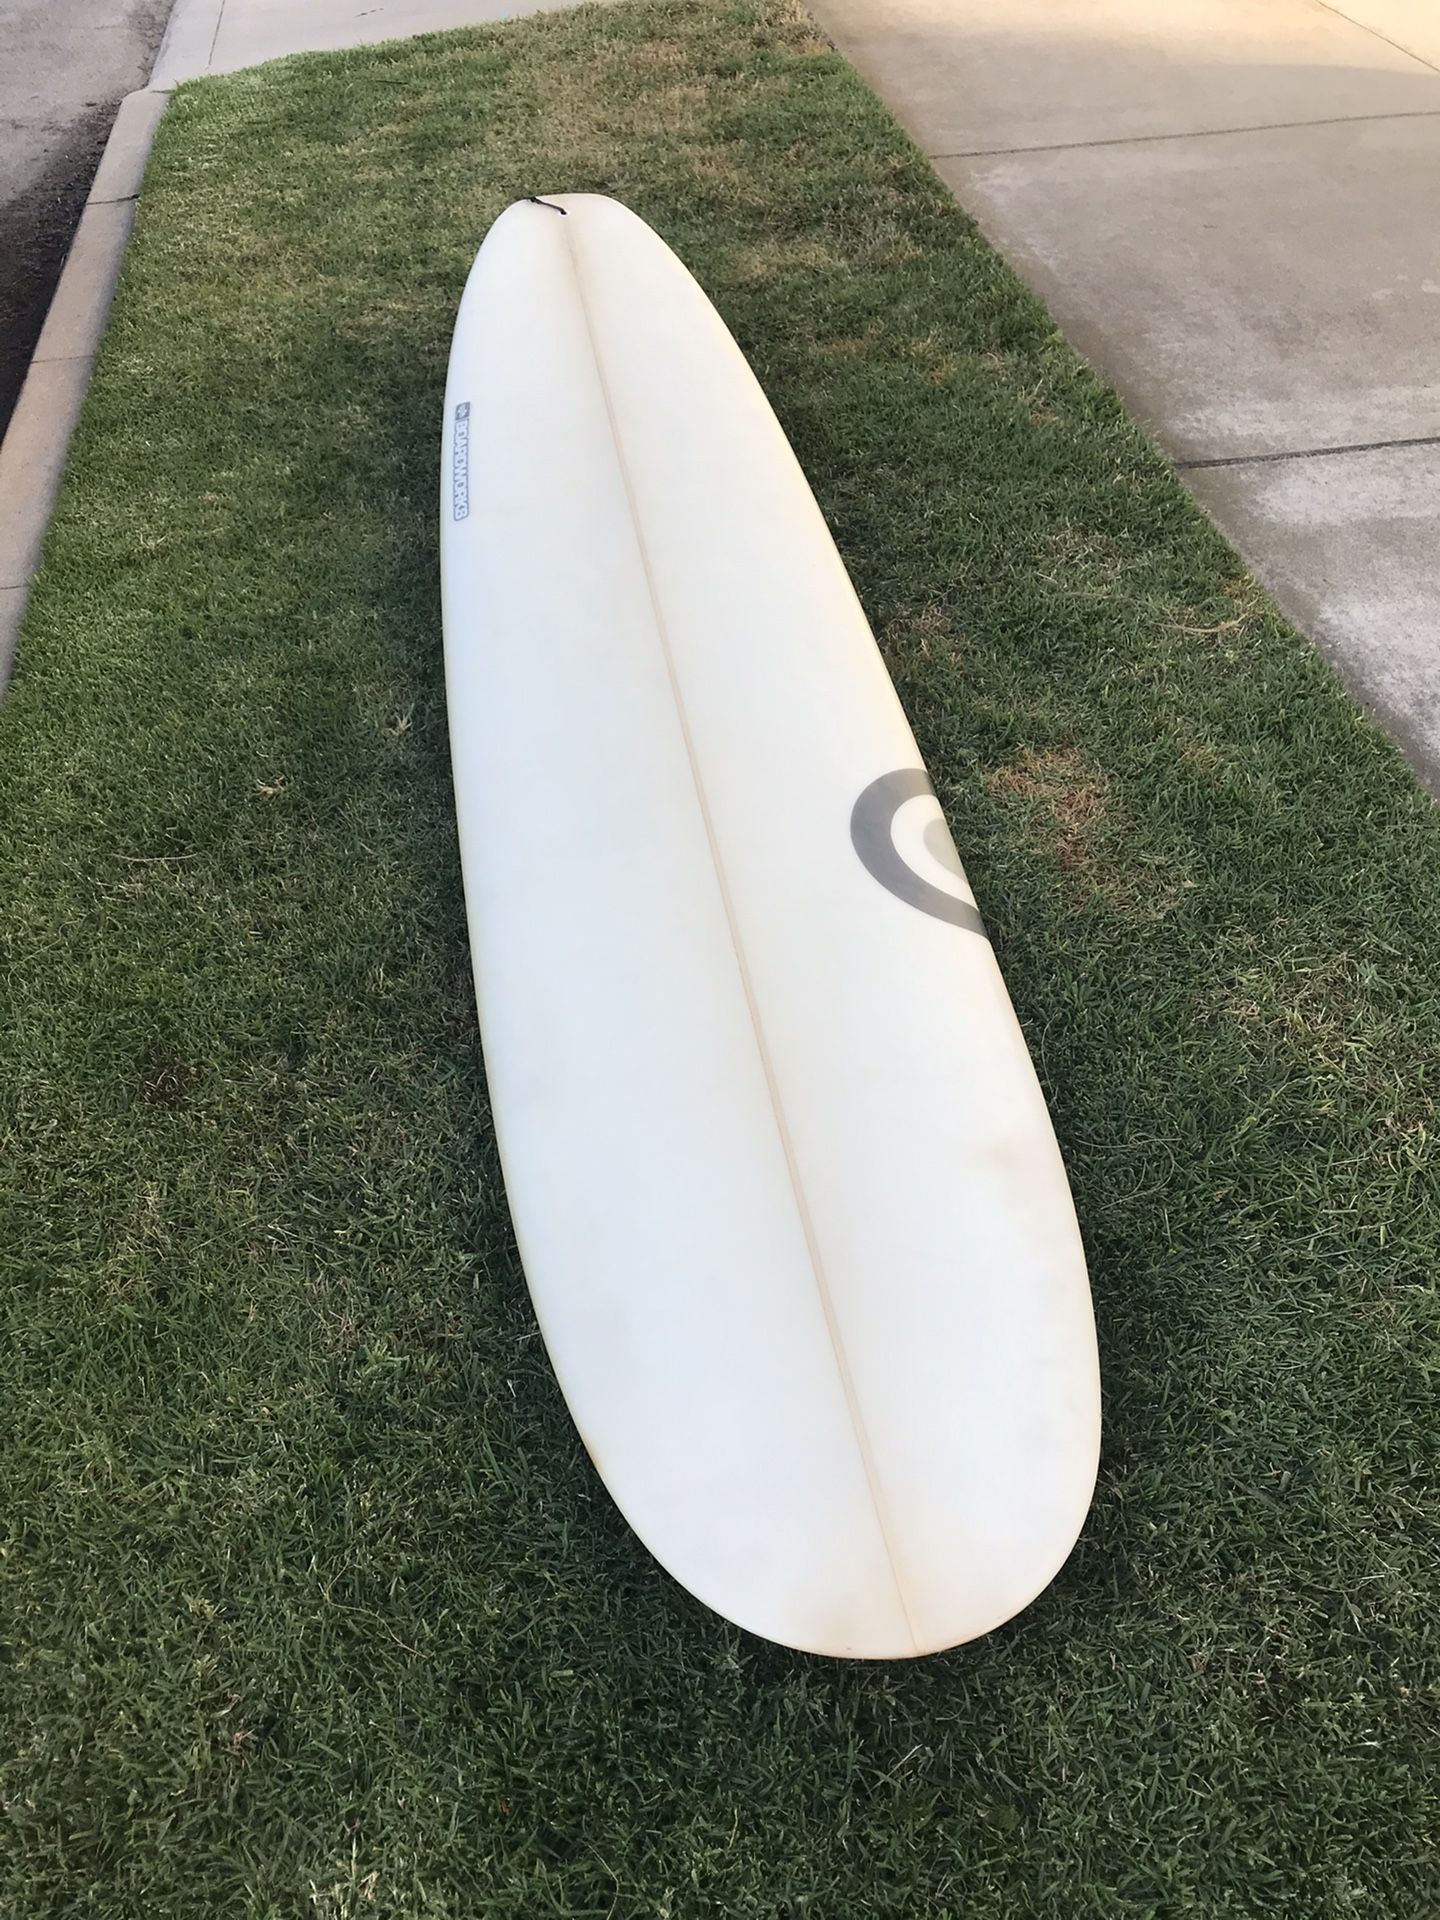 Longboard surfboard - 9’0”